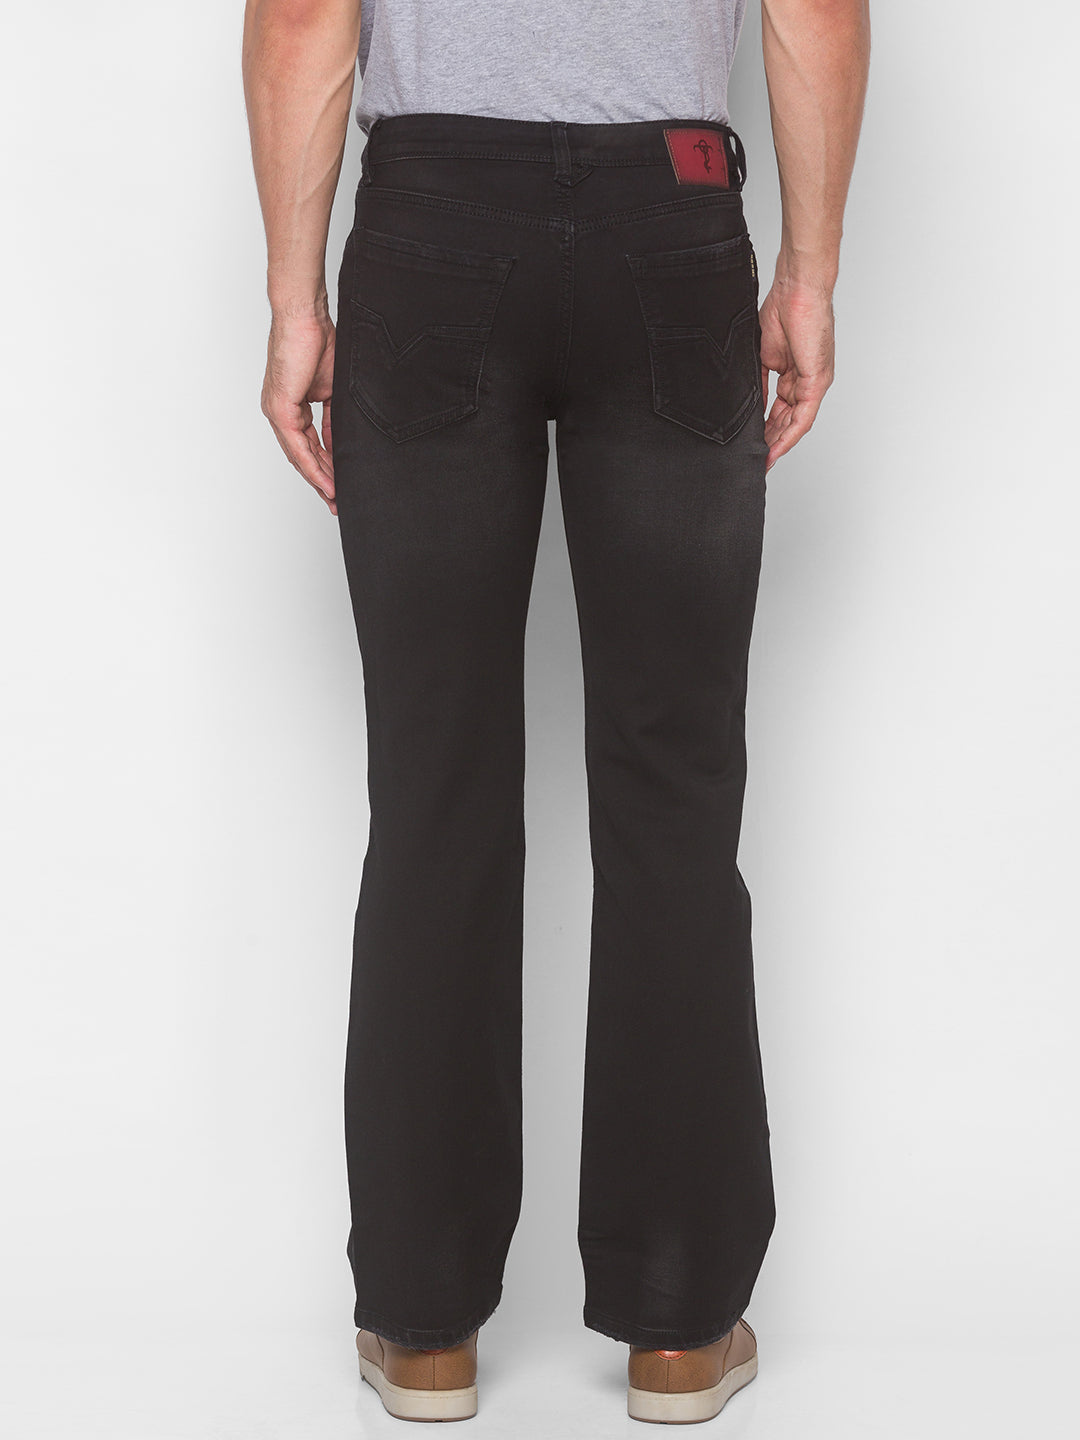 Carbon Black Bootcut Jeans